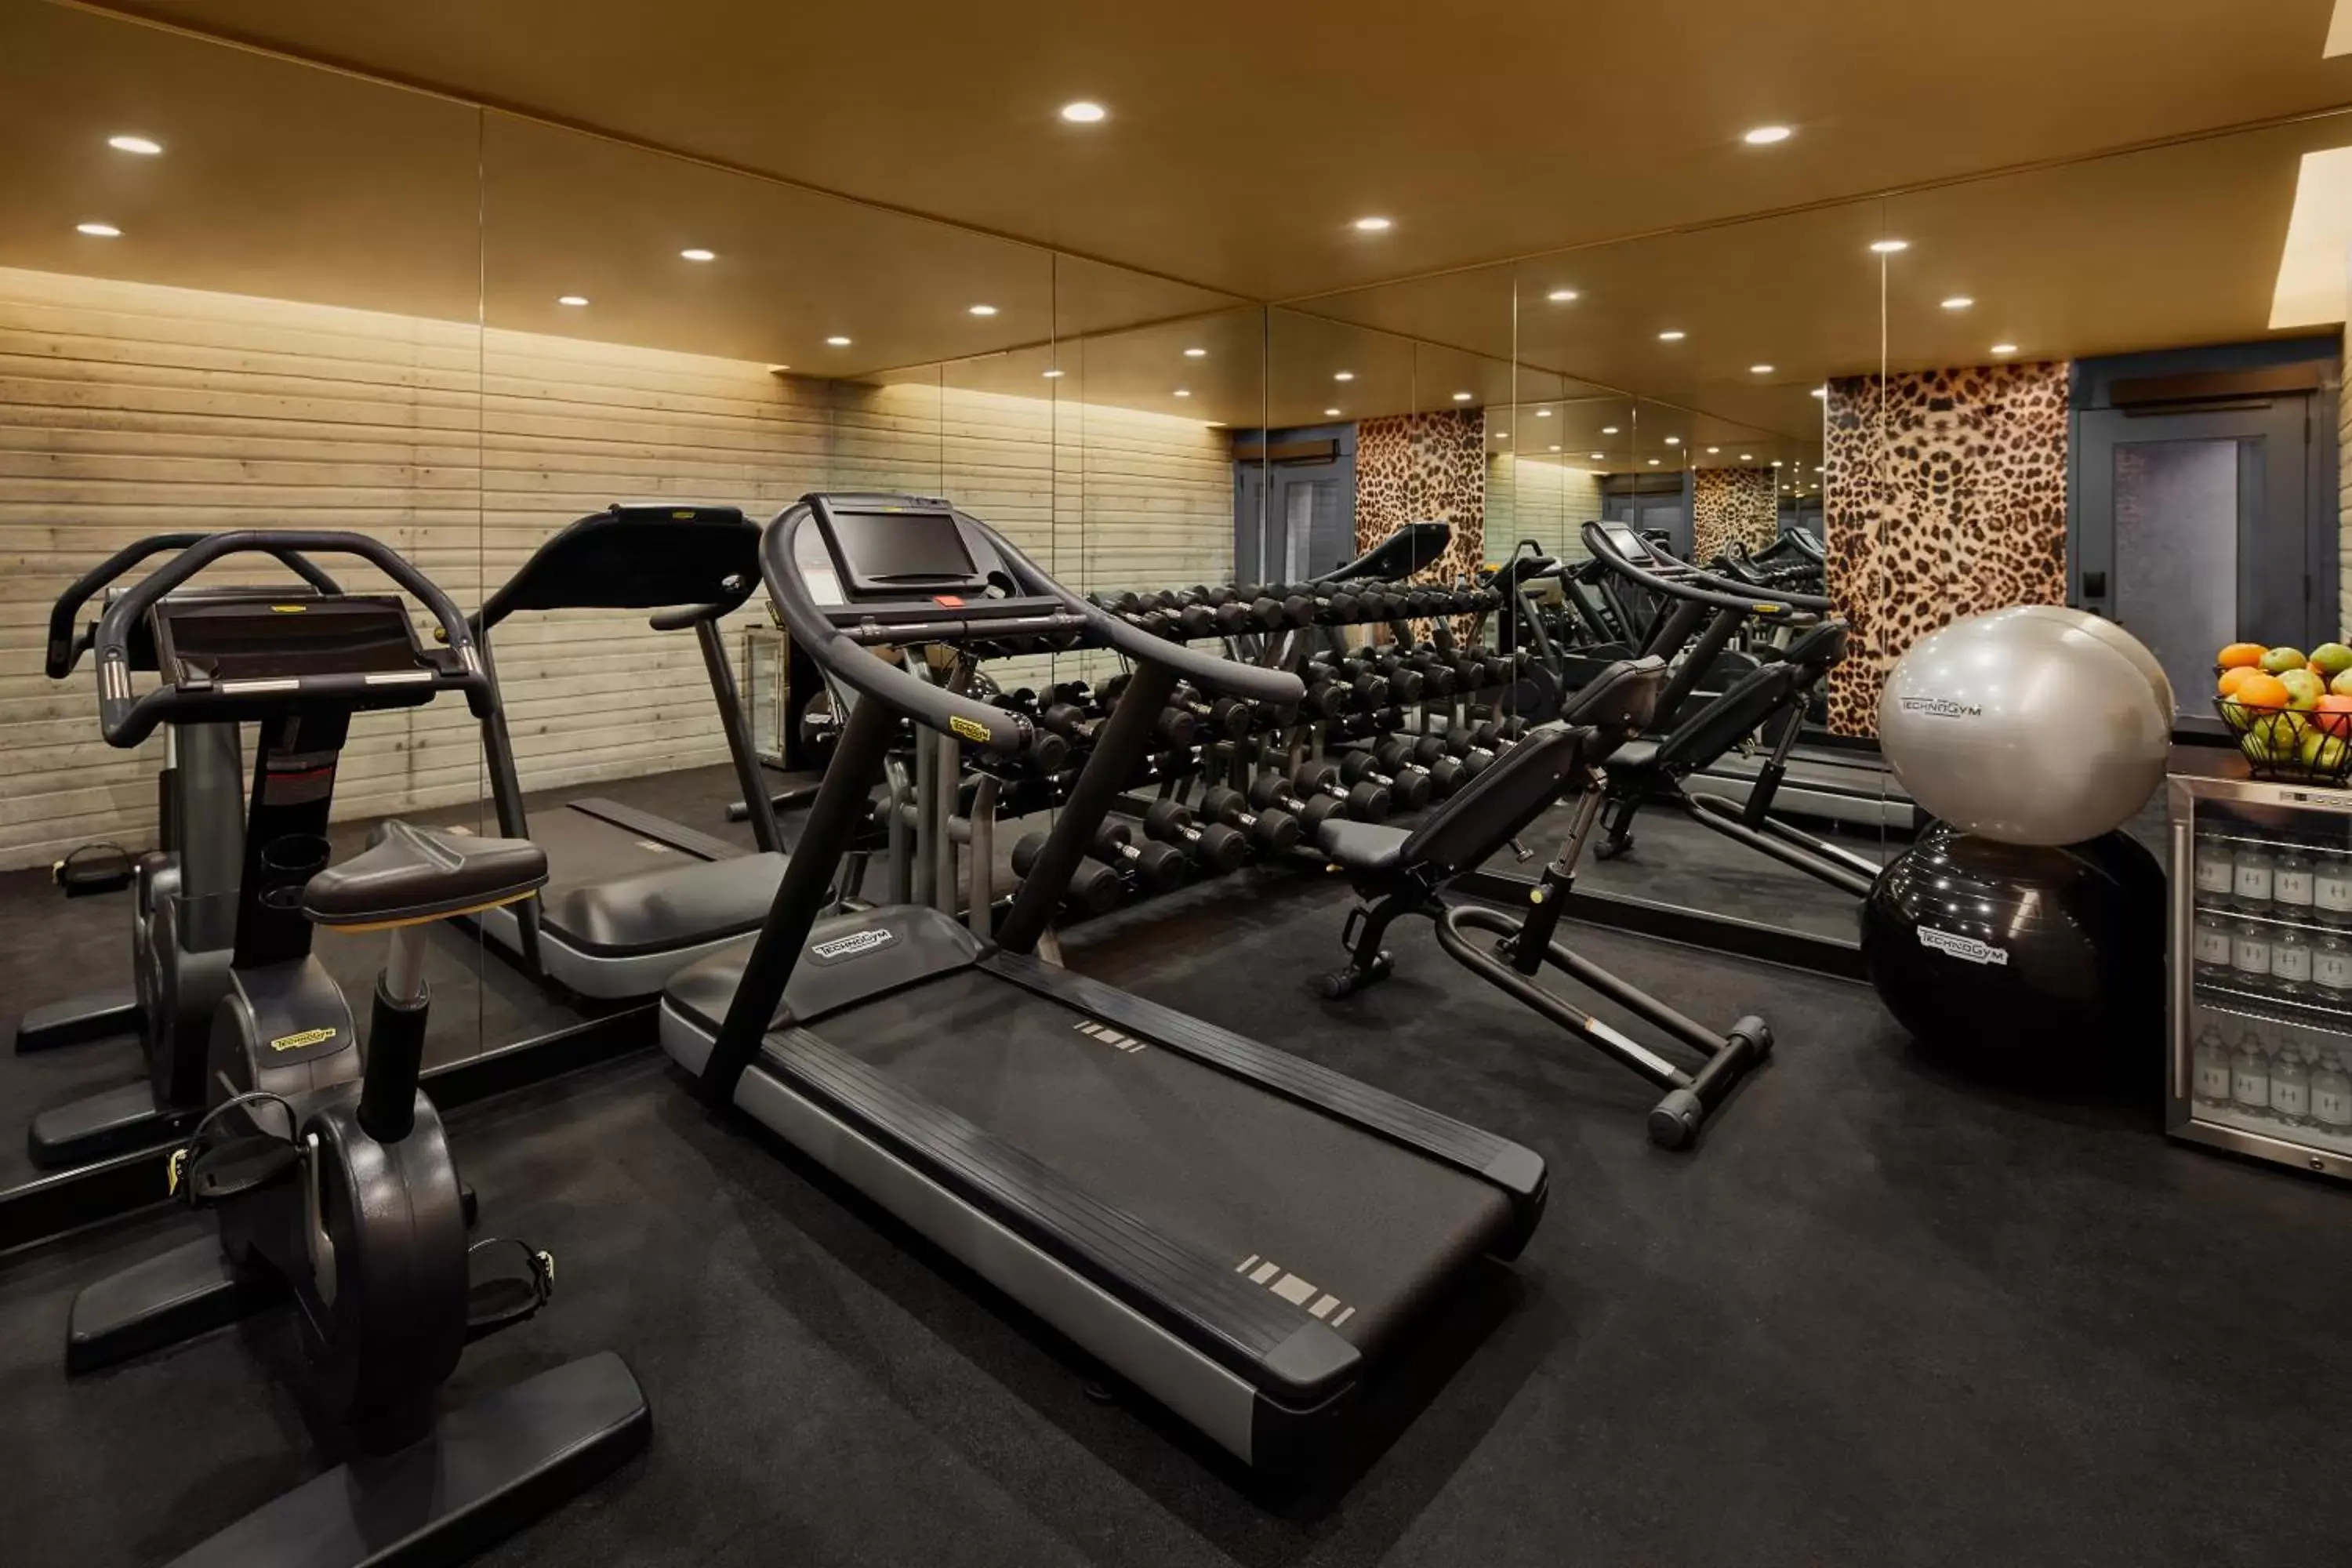 Fitness centre/facilities, Fitness Center/Facilities in Hotel Hendricks